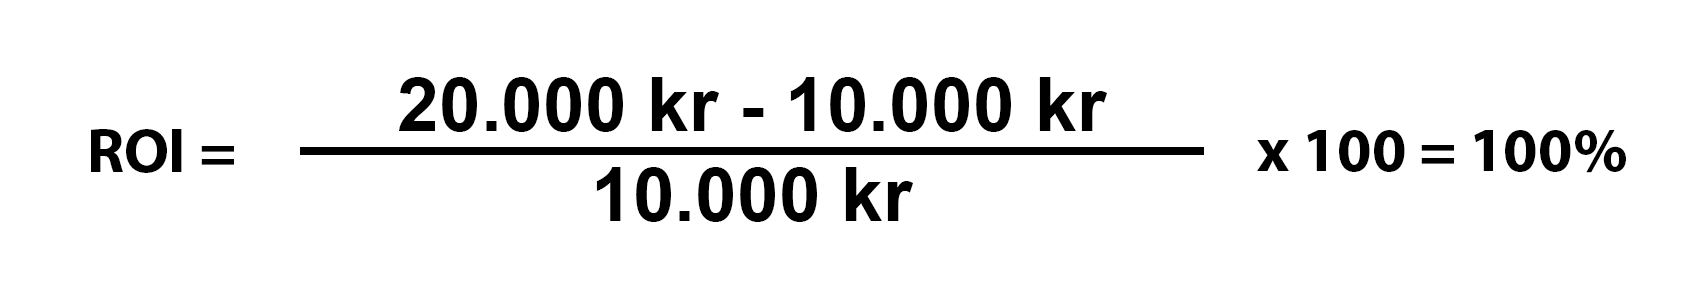 Roi eksempel: (20000 - 10000) / (10000) x 100 = 100%